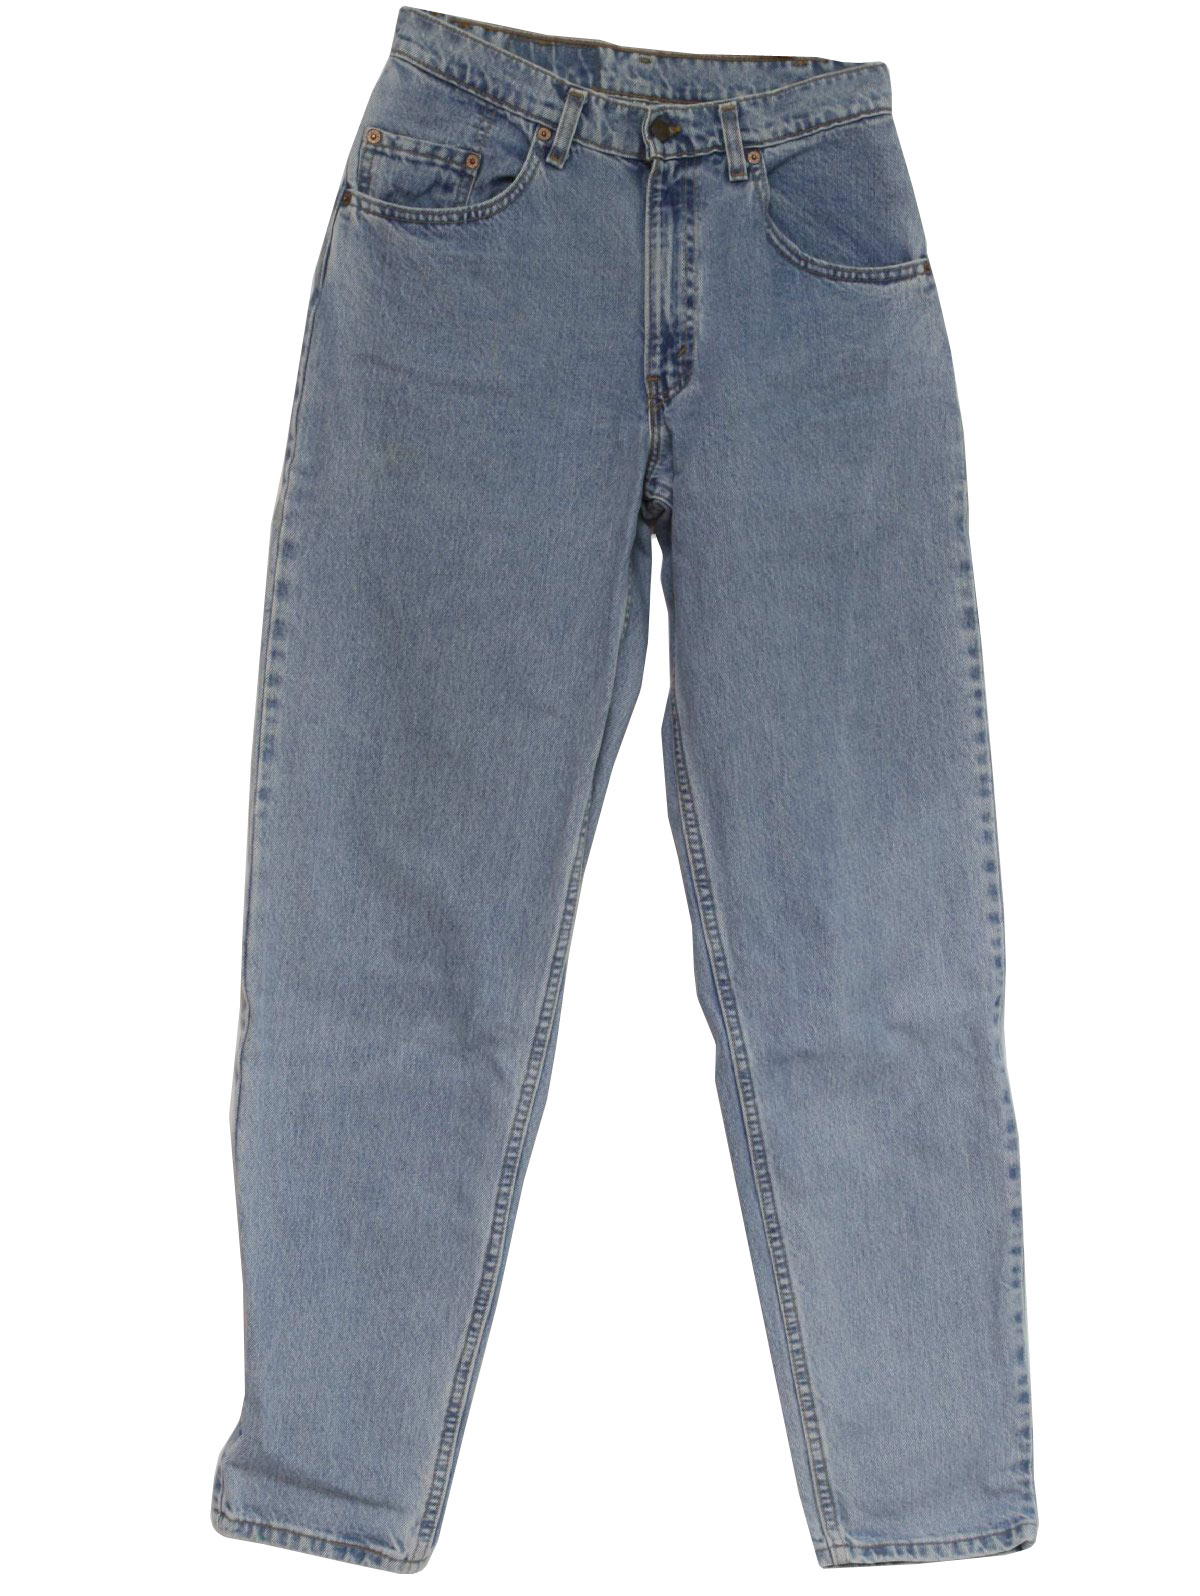 90s Retro Pants: 90s -Levis- Mens light blue colored denim cotton ...